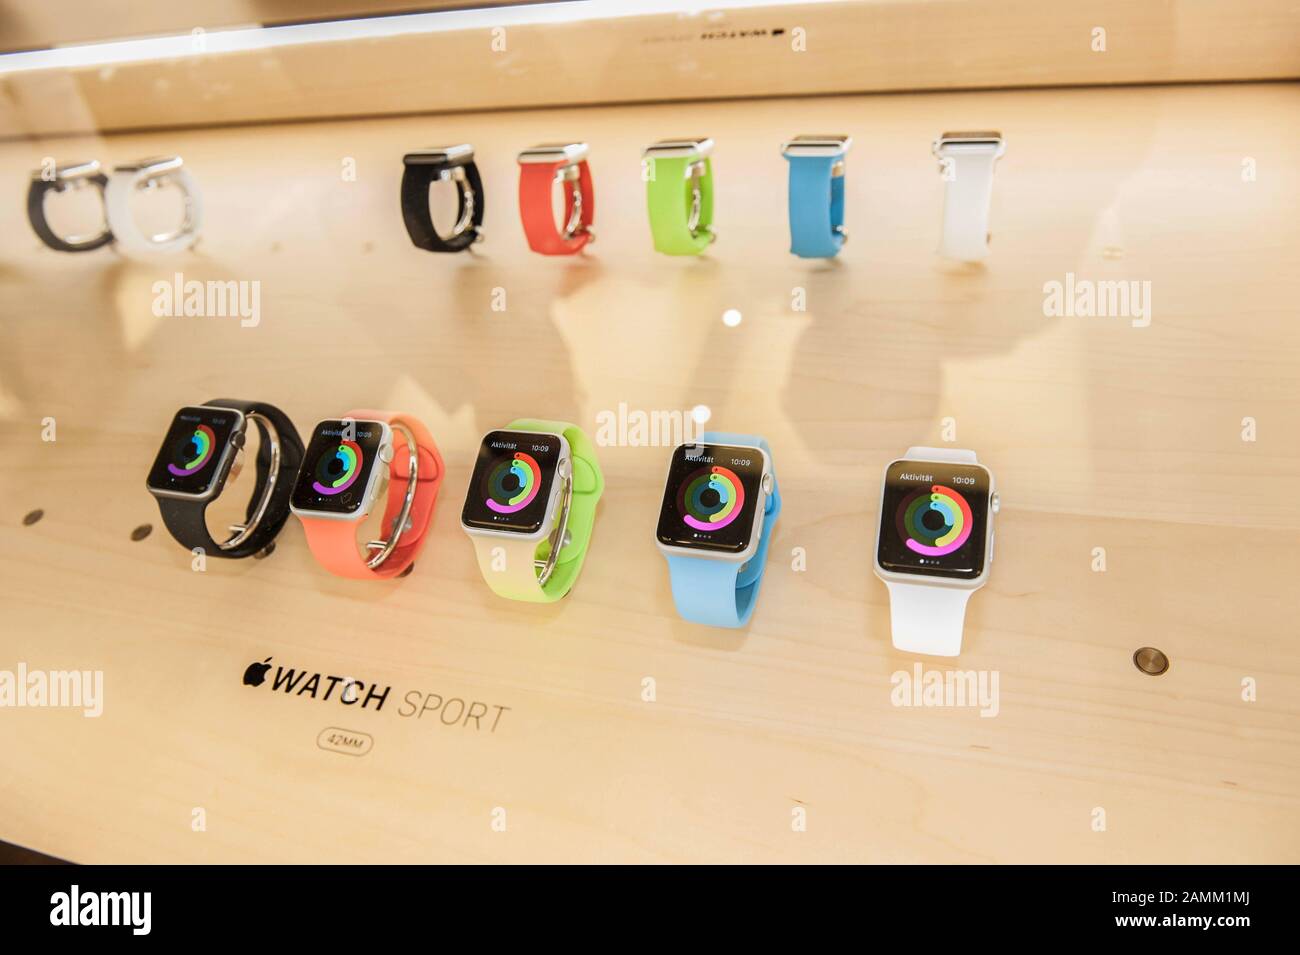 Kunden können die Apple Watch im Apple Store Rosenstraße in München ausprobieren. [Automatisierte Übersetzung] Stockfoto